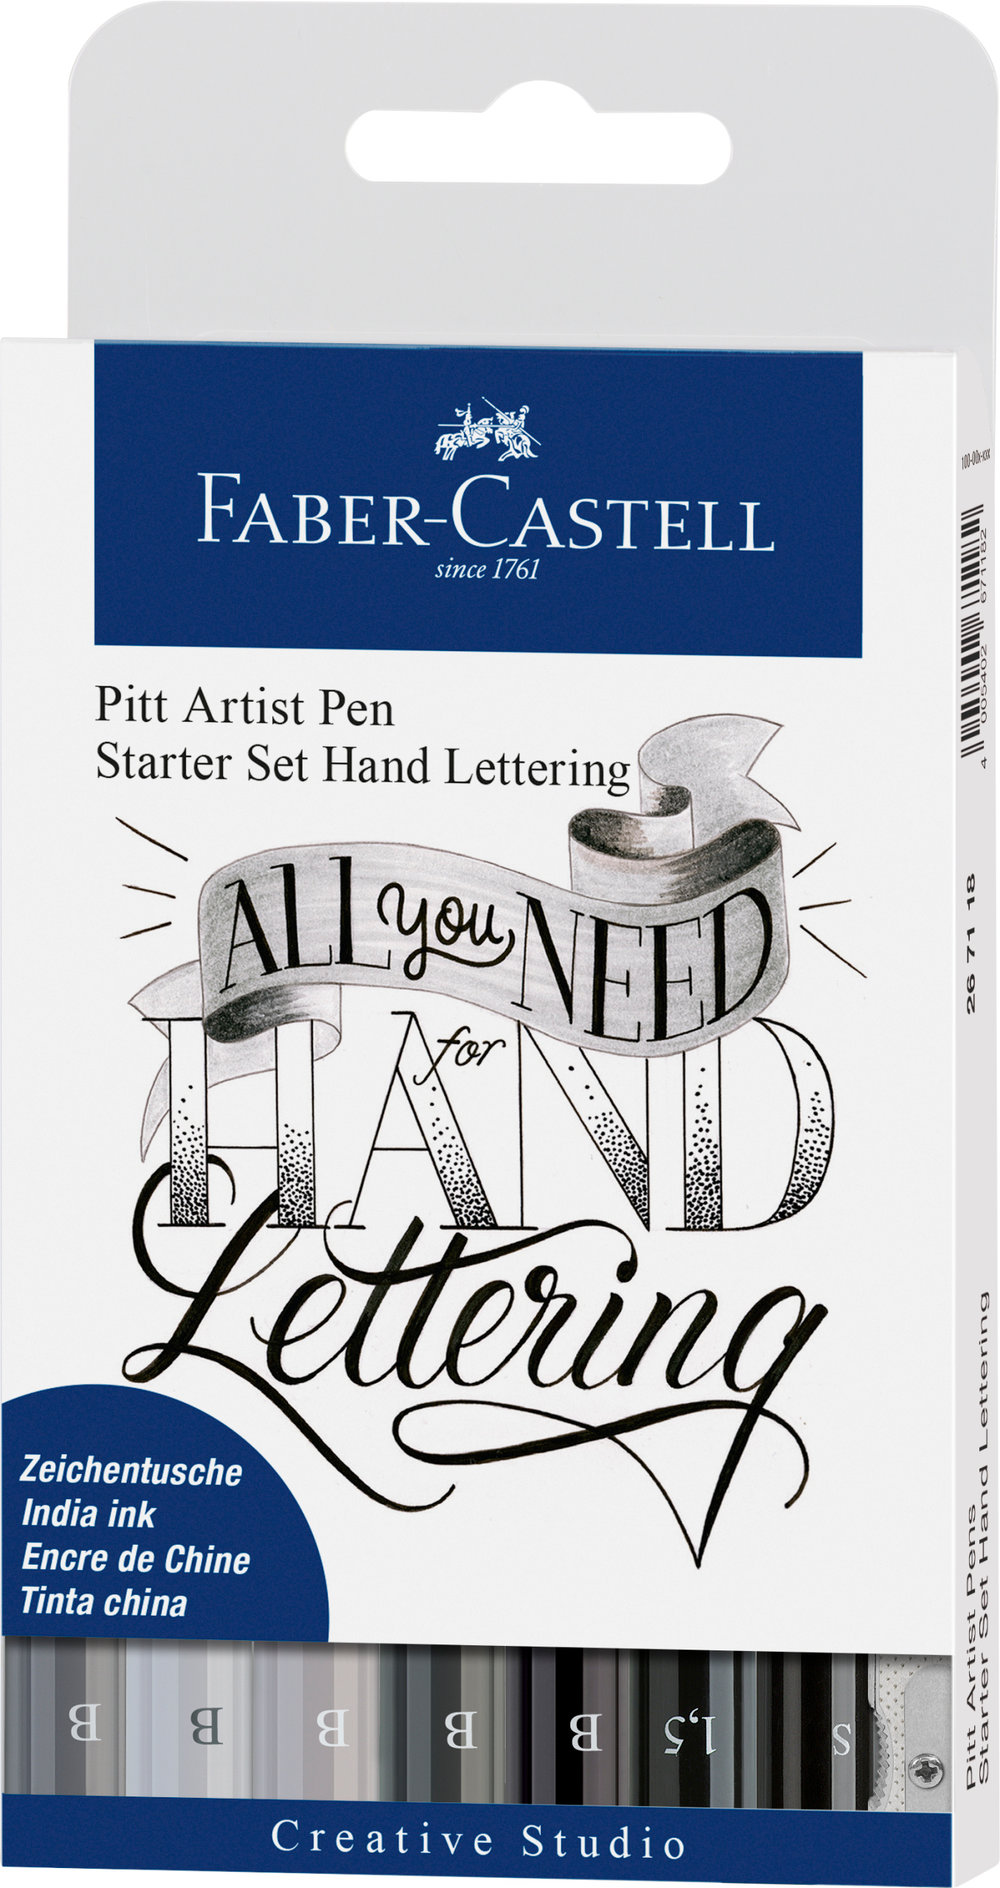 Faber-Castell Starter Set Hand Lettering